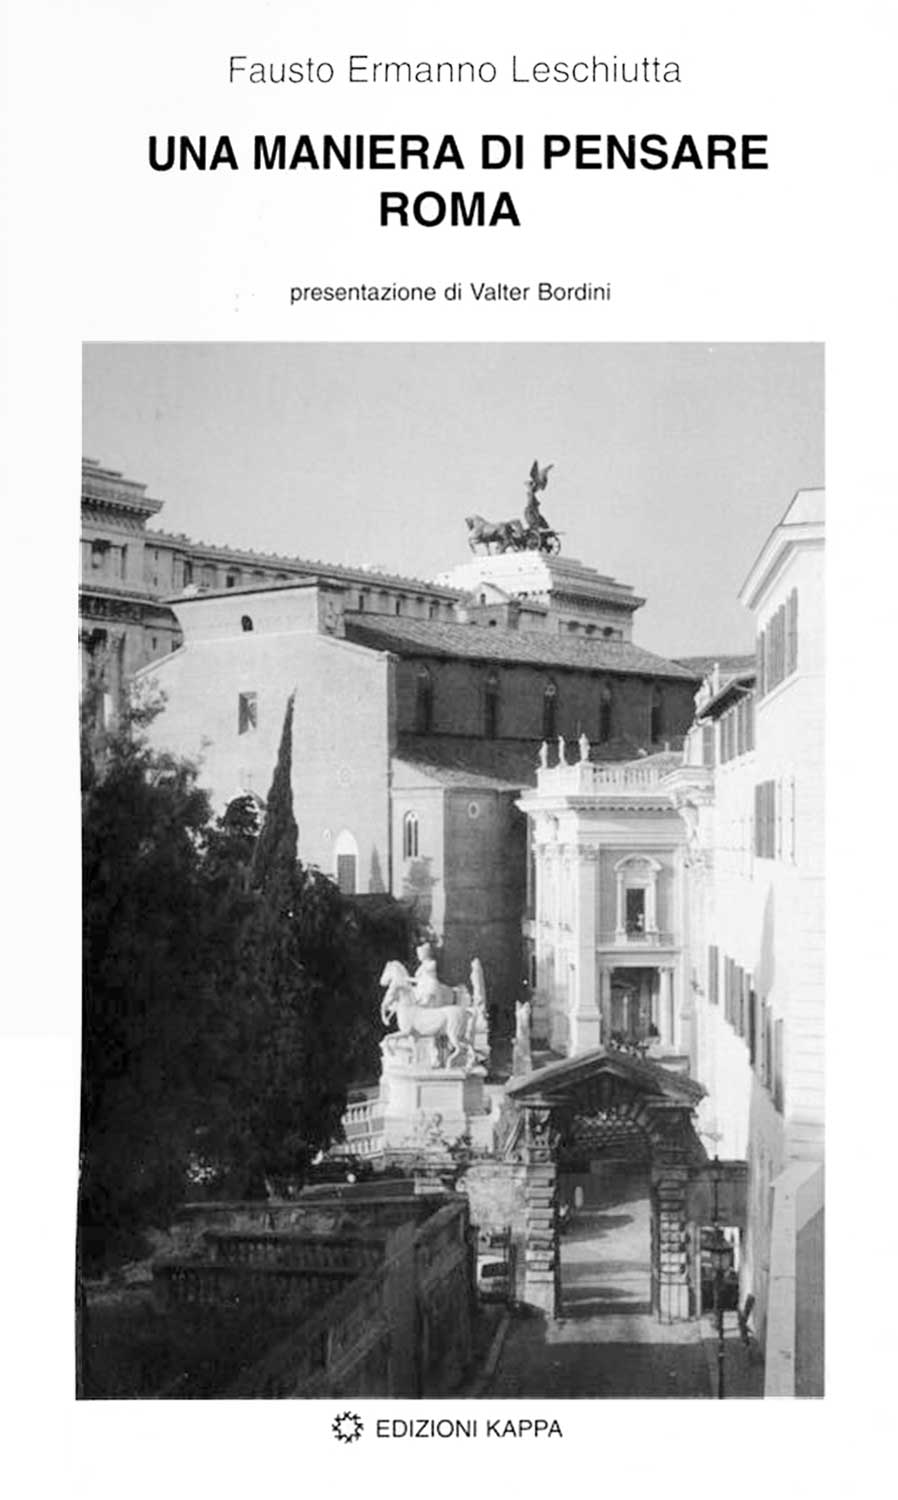 18 - Una maniera di pensare Roma, Edizioni Kappa, Roma 1996 - Copertina